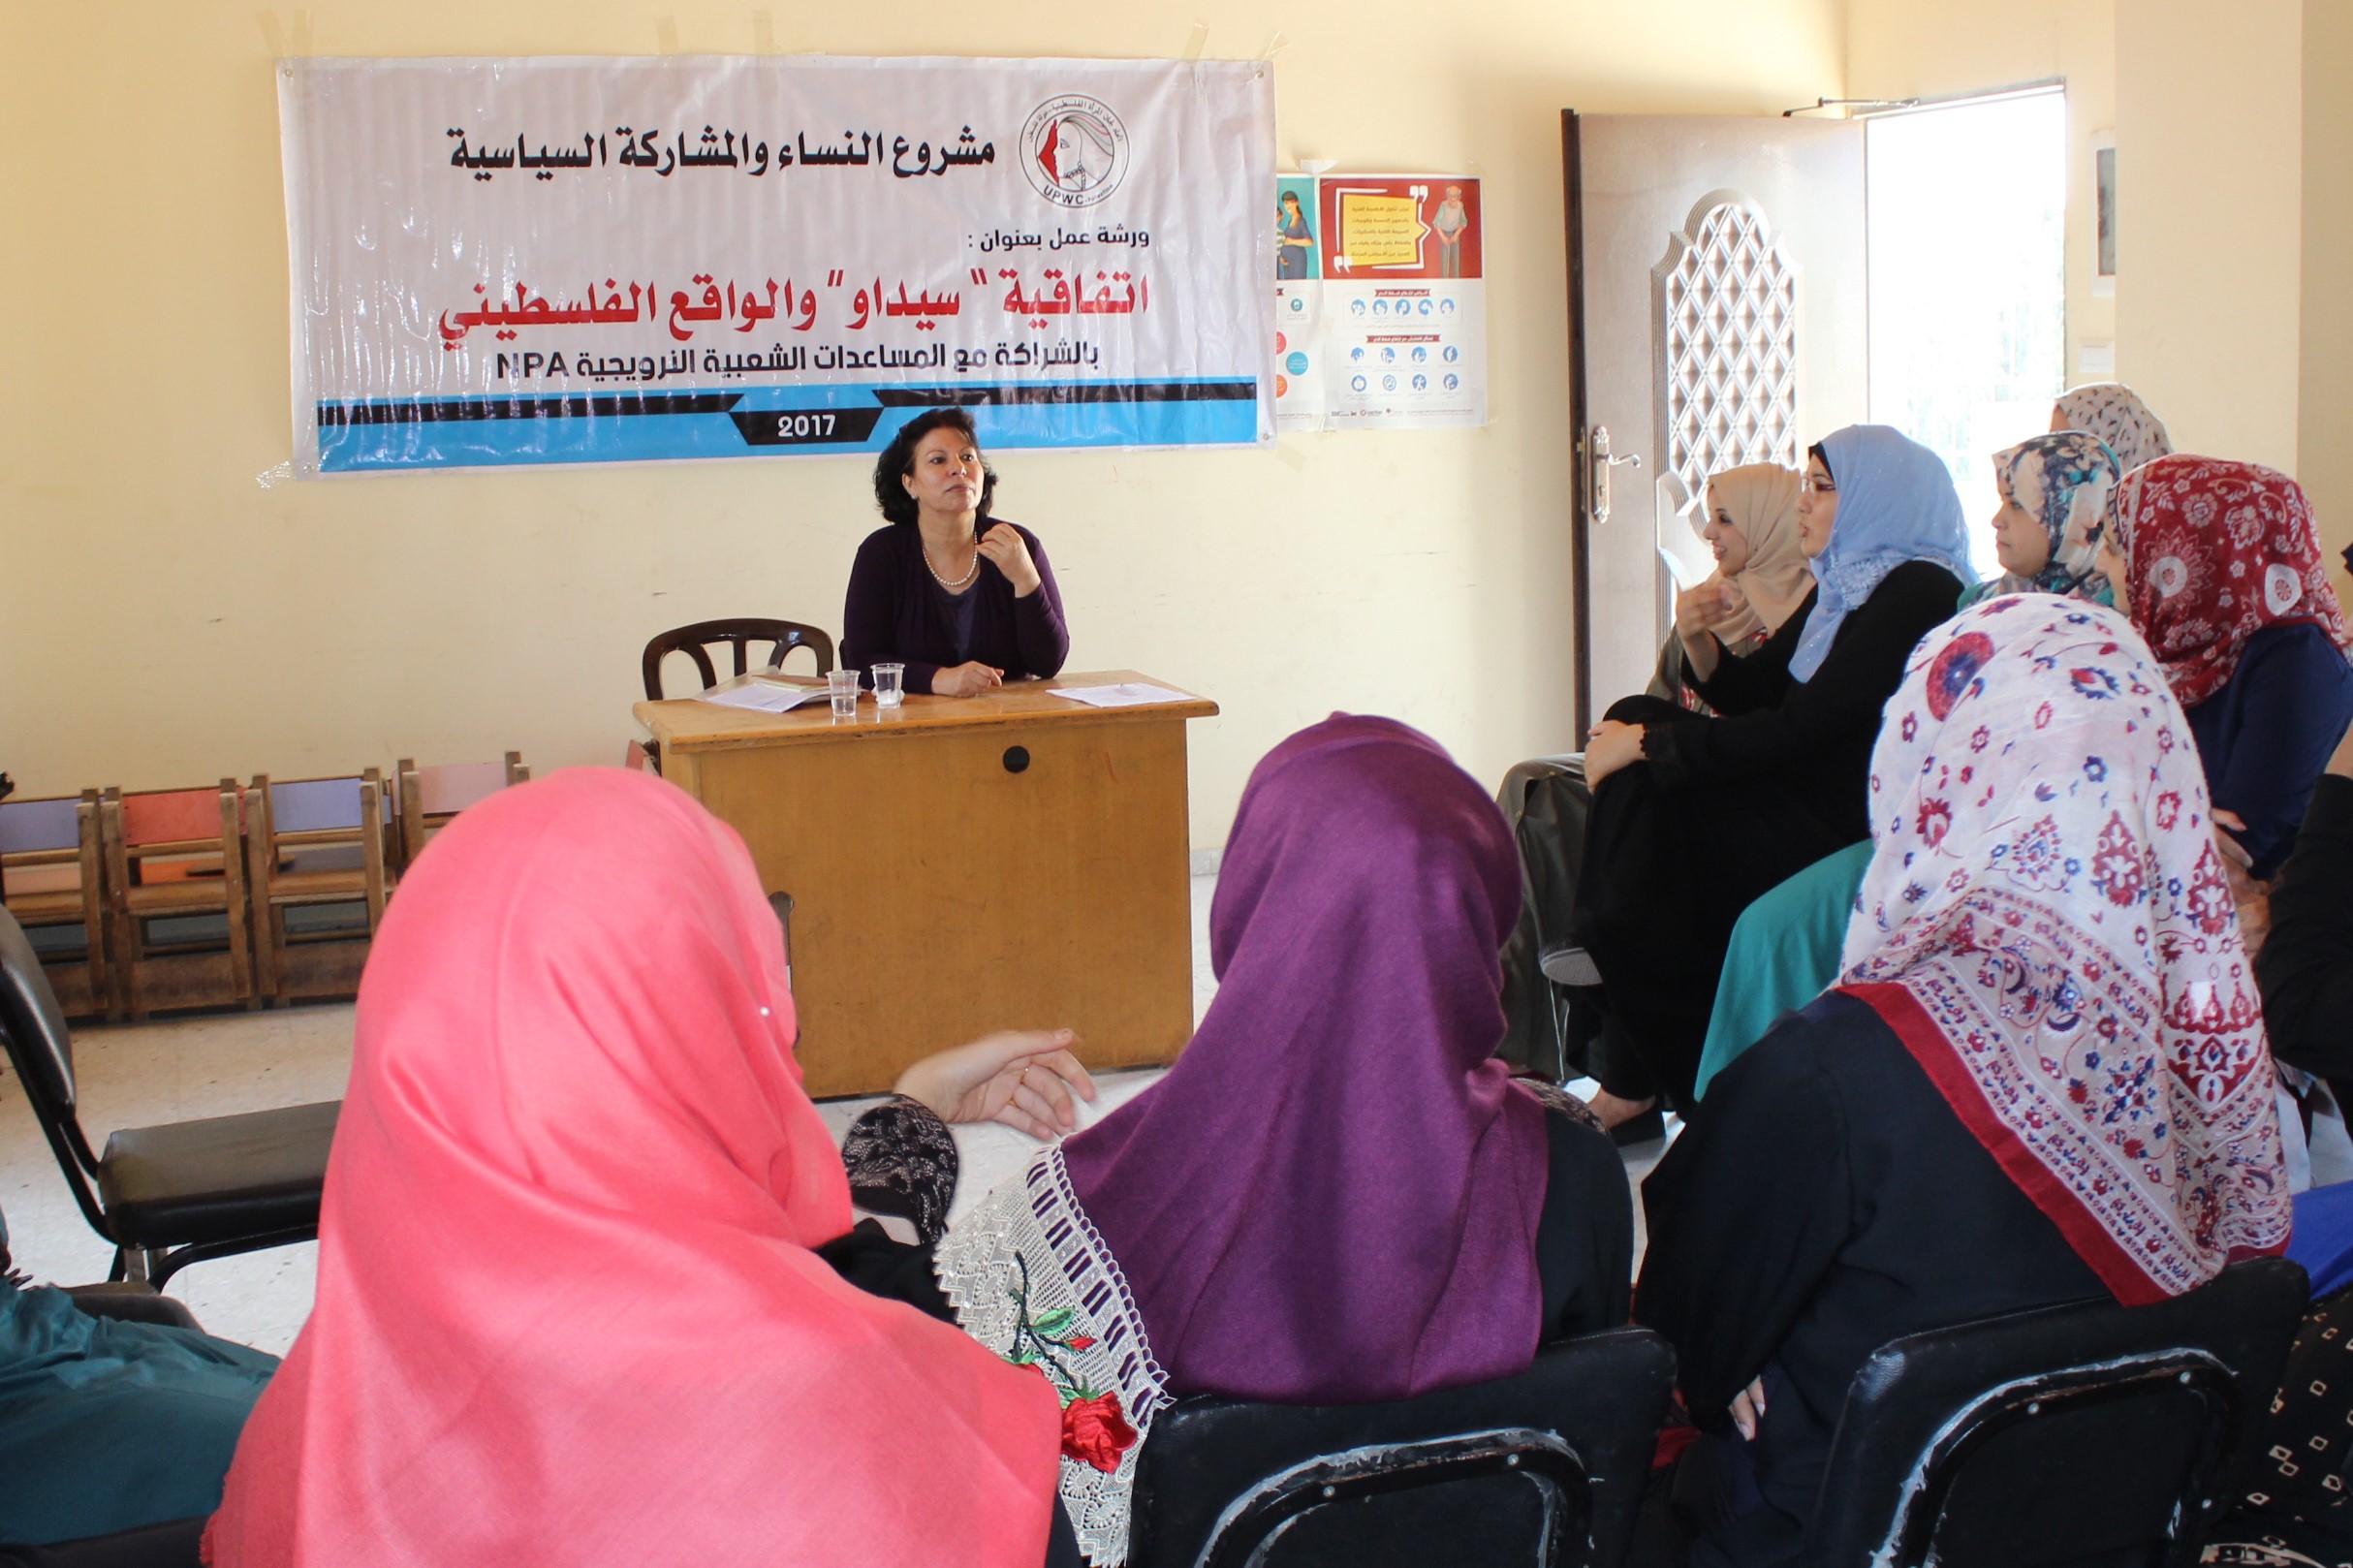 اتحاد لجان المرأة الفلسطينية ينظم ورشة حول ” اتفاقية سيداو والواقع الفلسطيني” في المغازي